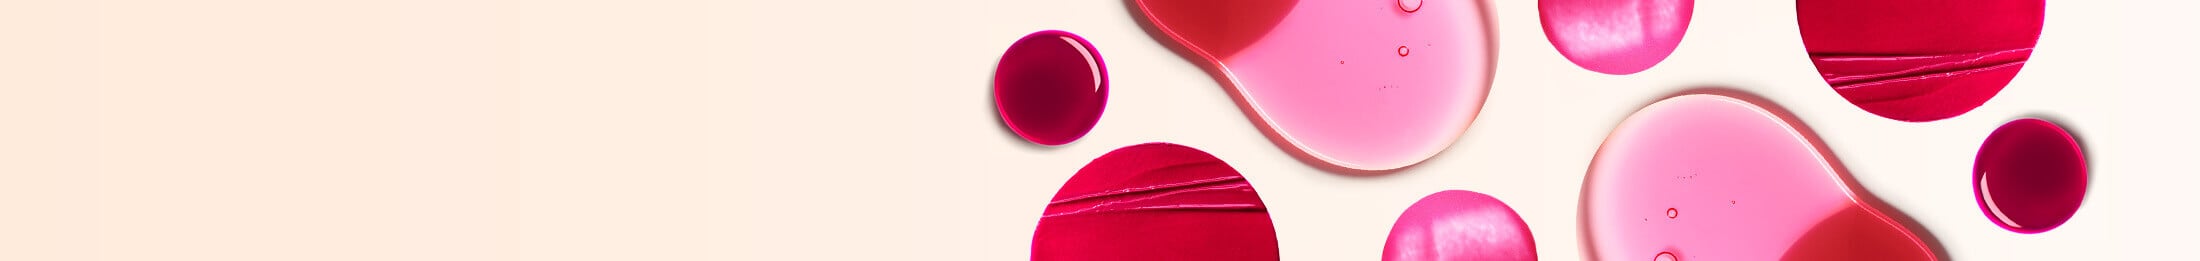 Clarins lippenpflege - Die besten Clarins lippenpflege ausführlich analysiert